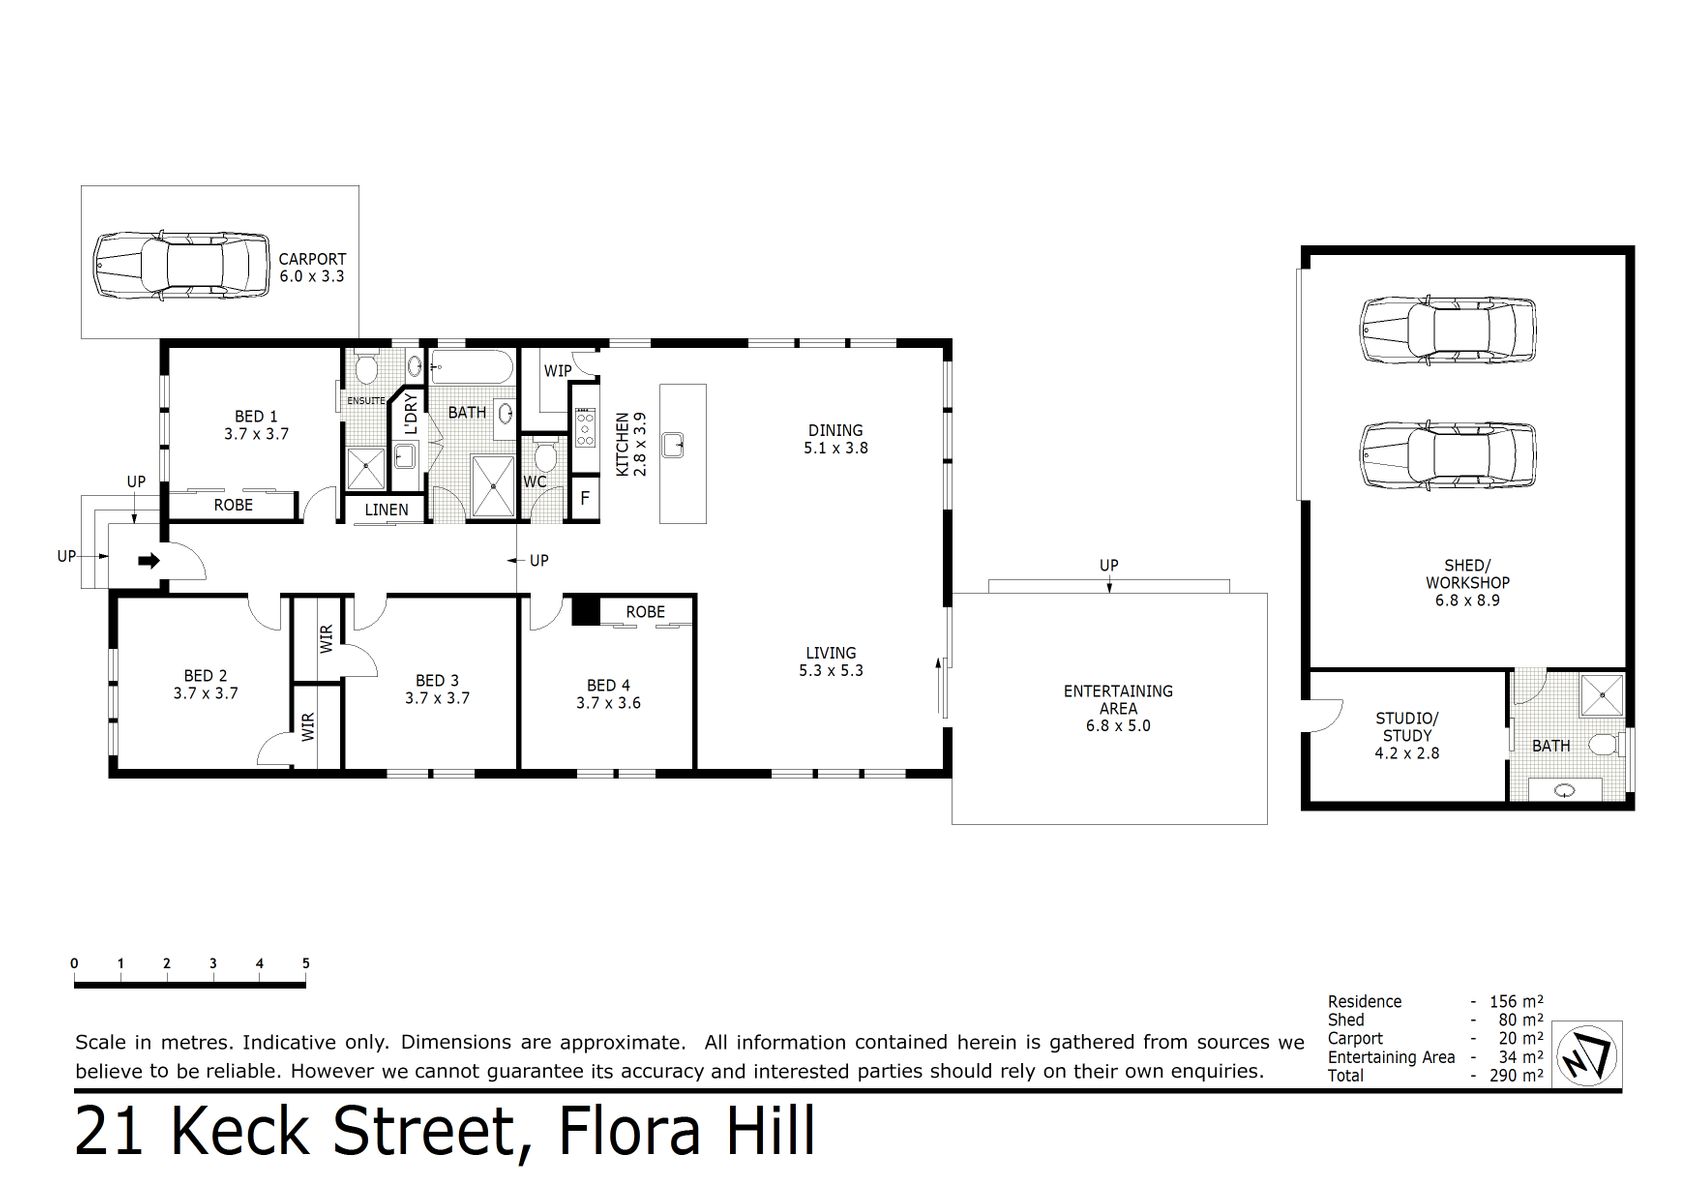 21 Keck Street Flora Hill (22 MAR 2021) 156sqm